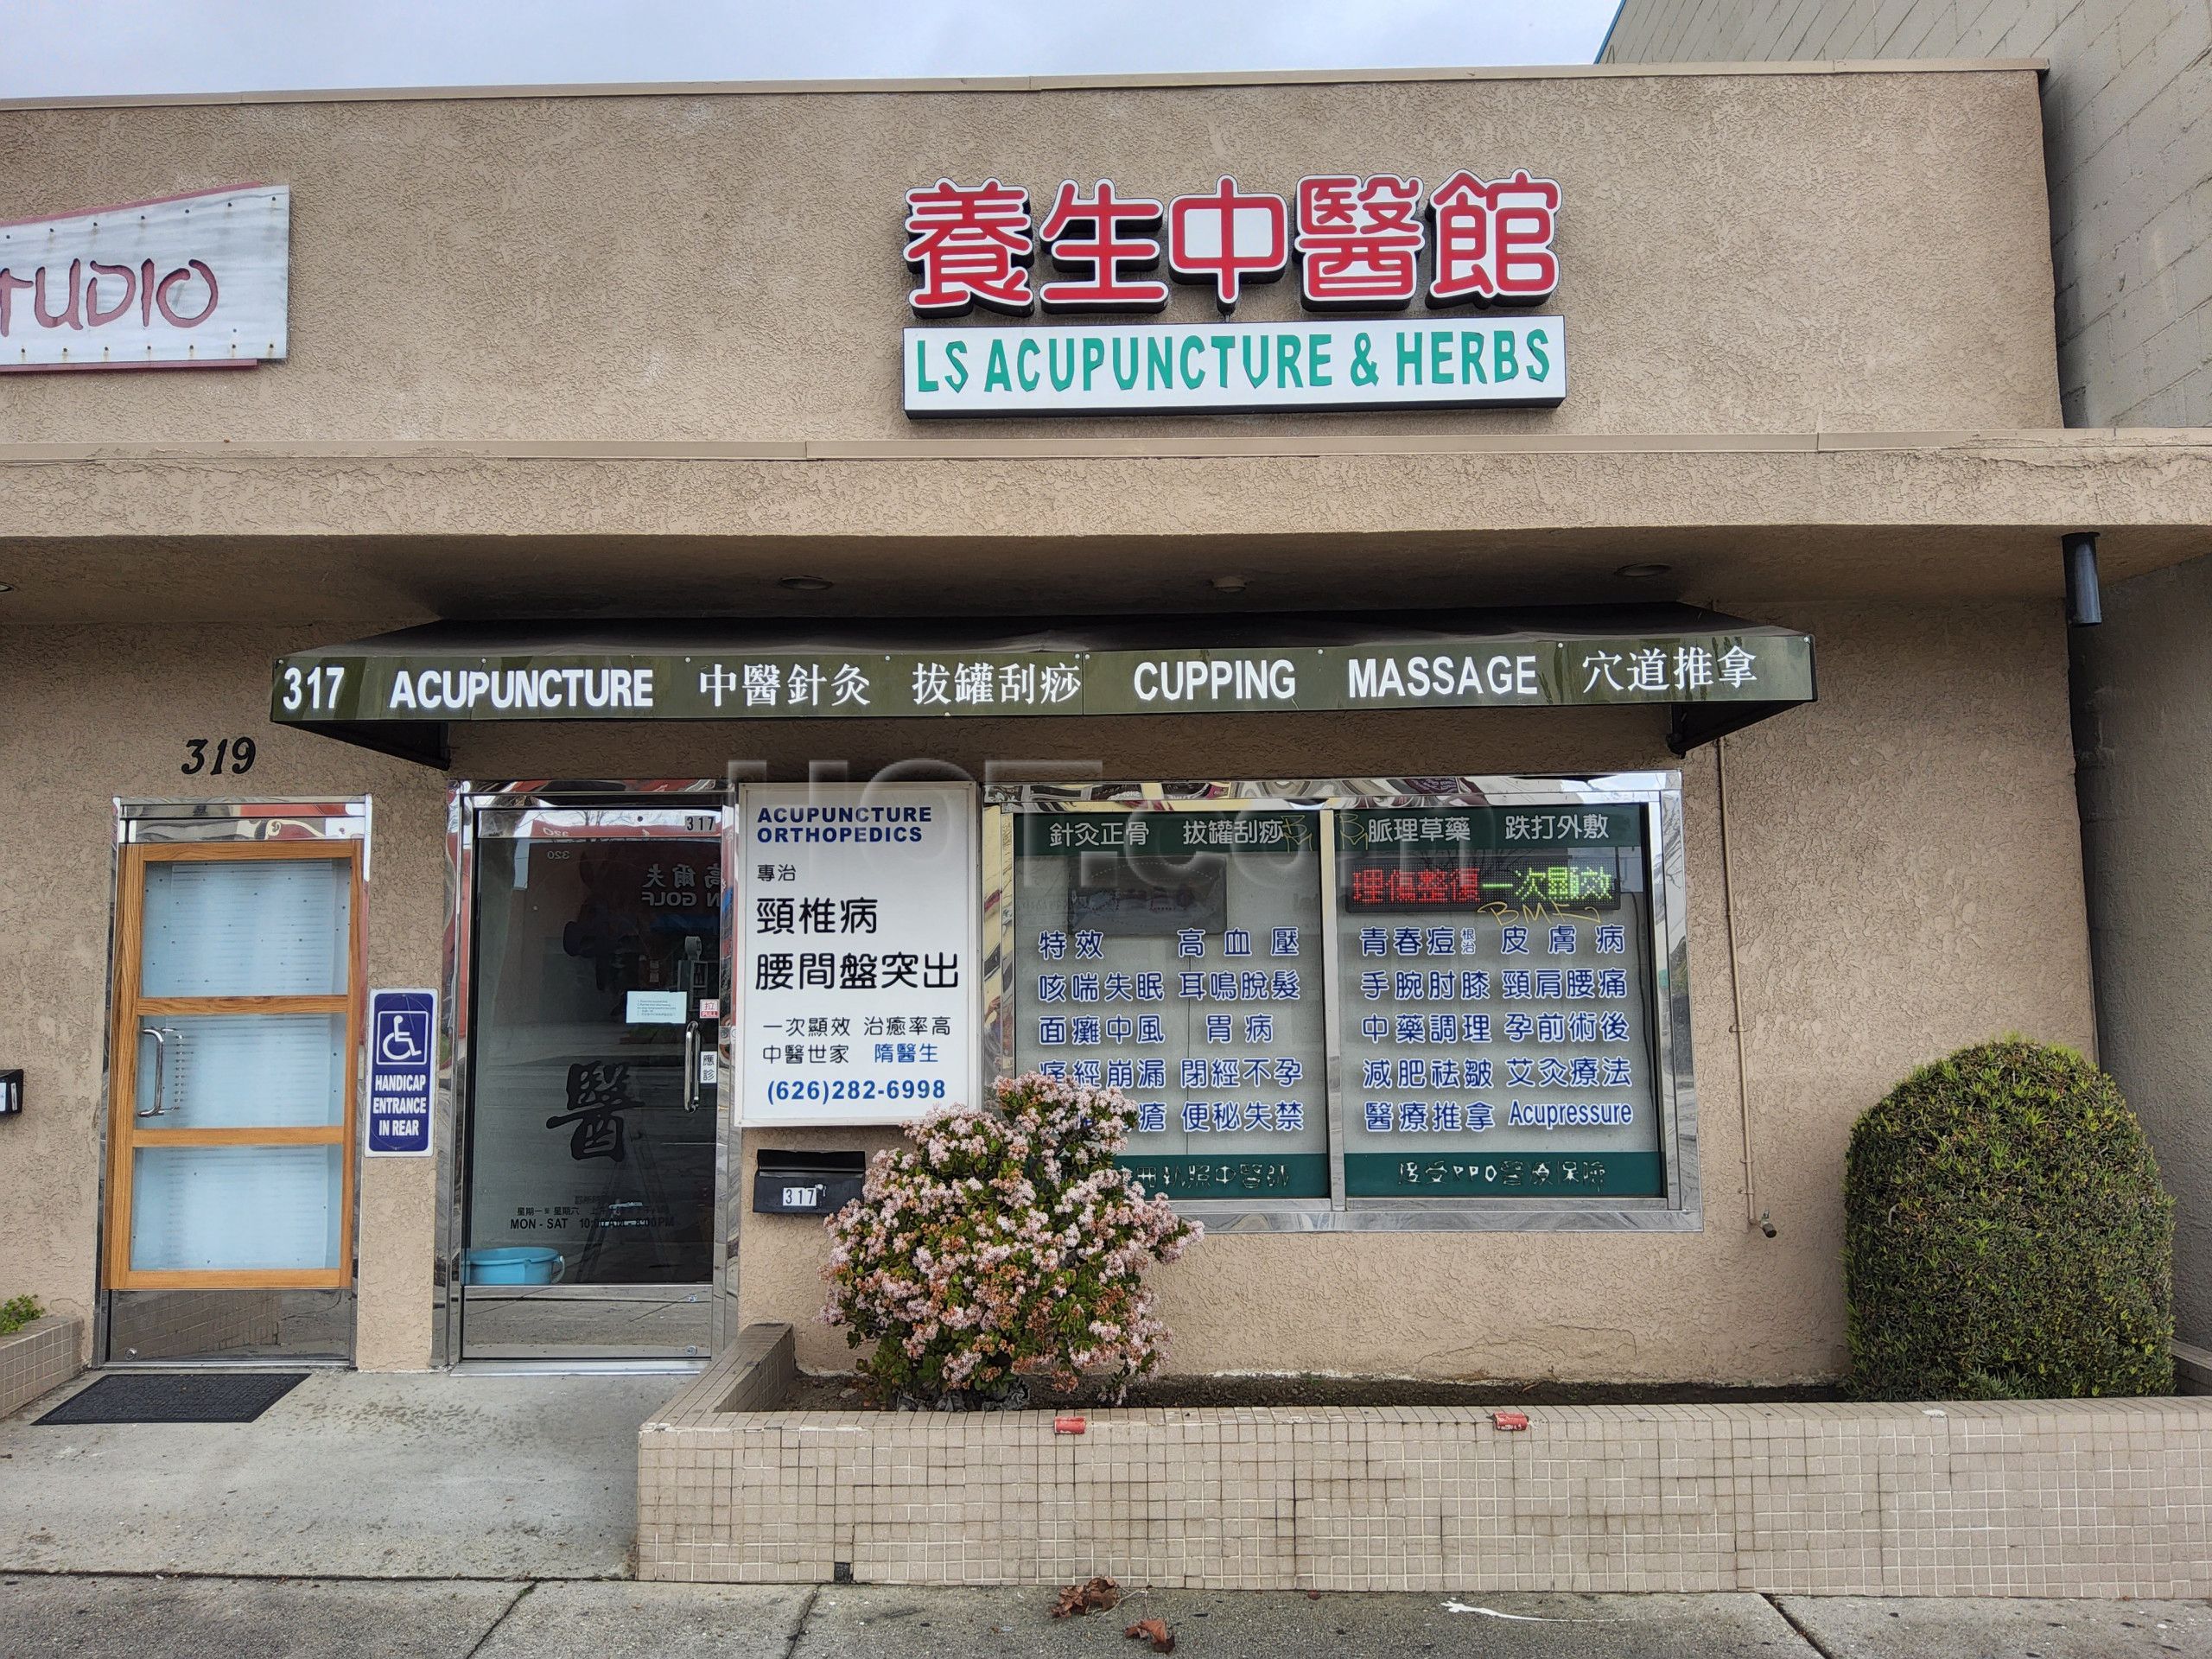 San Gabriel, California Ls Accupunture & Herbs